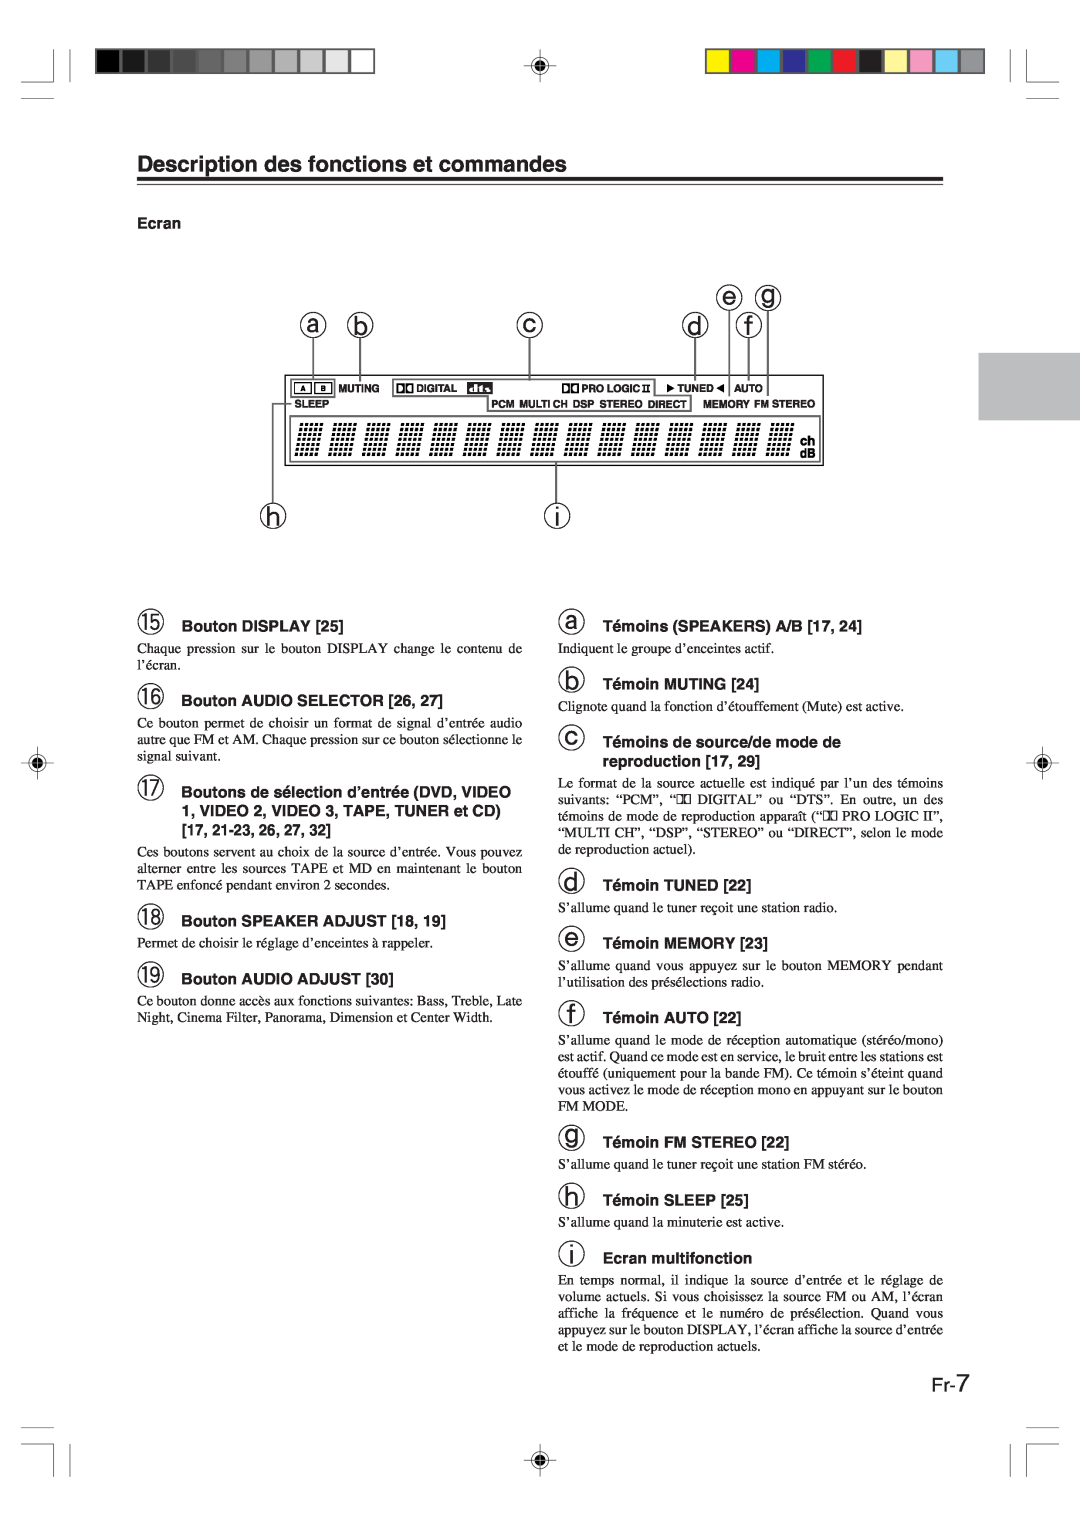 Onkyo HT-R420 manual Description des fonctions et commandes, Fr-7 